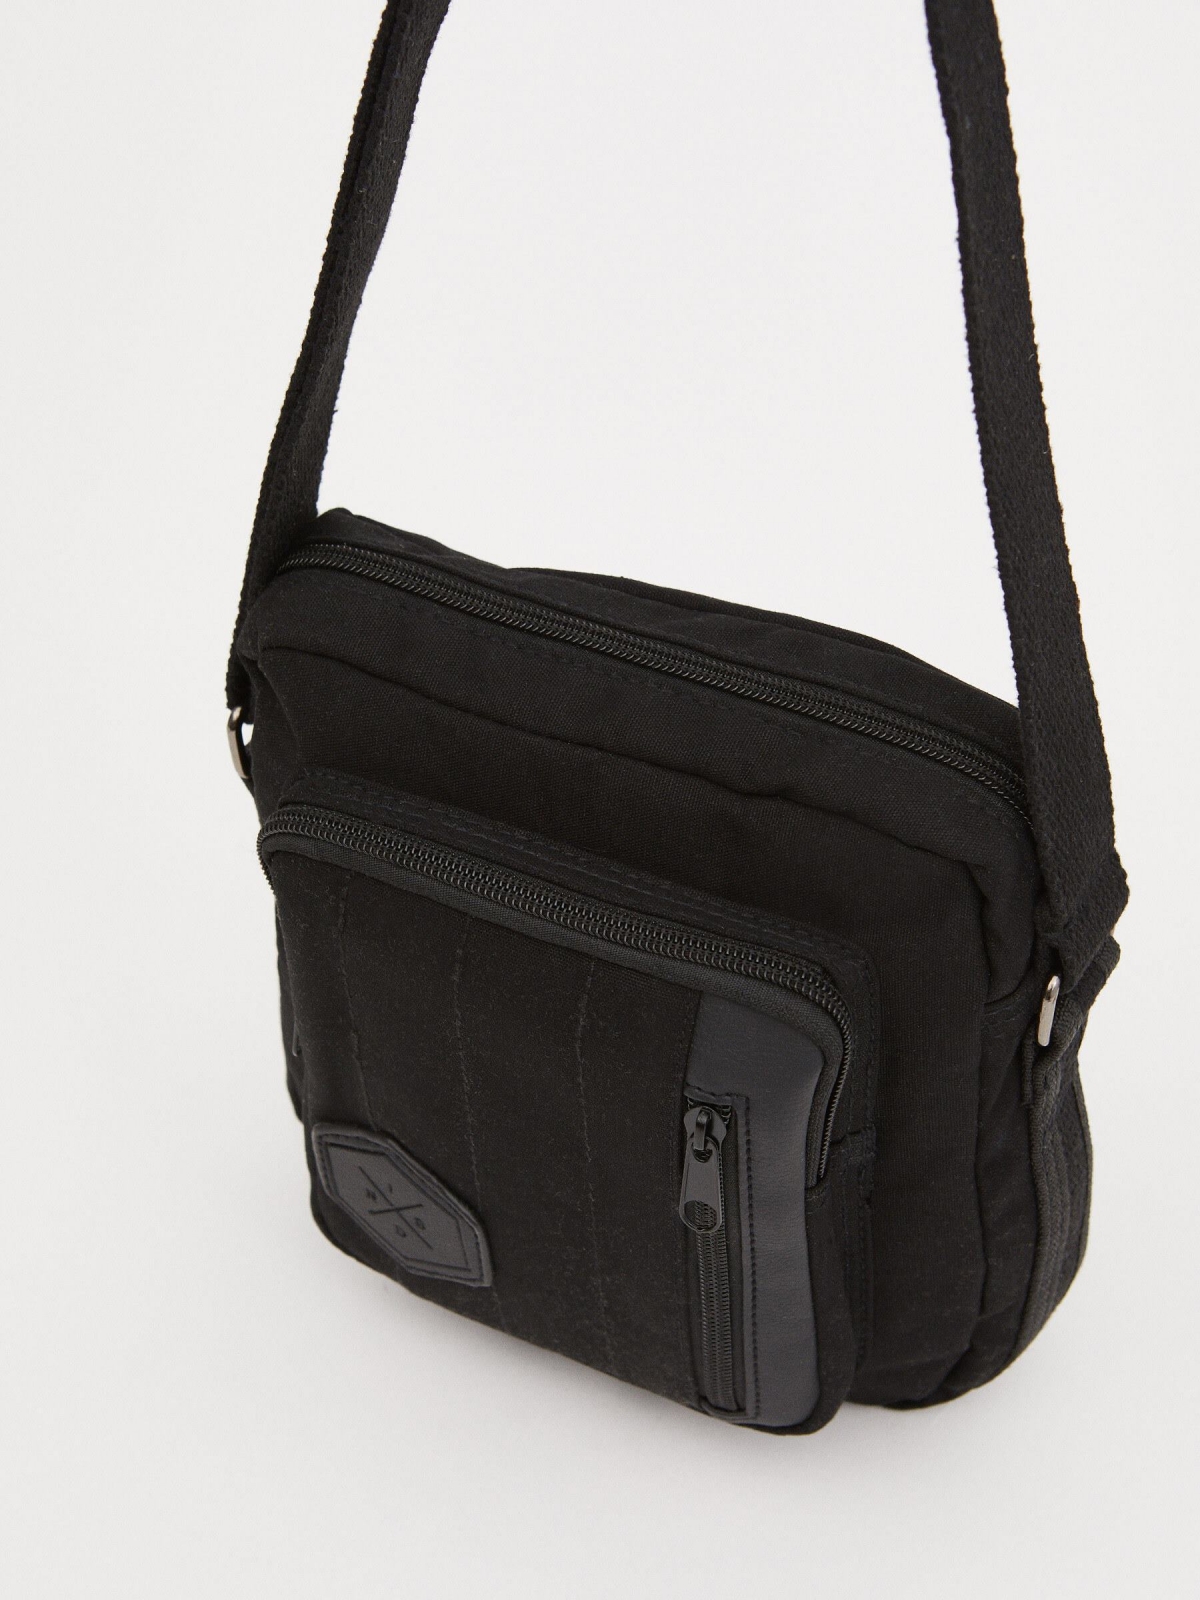 Shoulder bag exterior pocket black